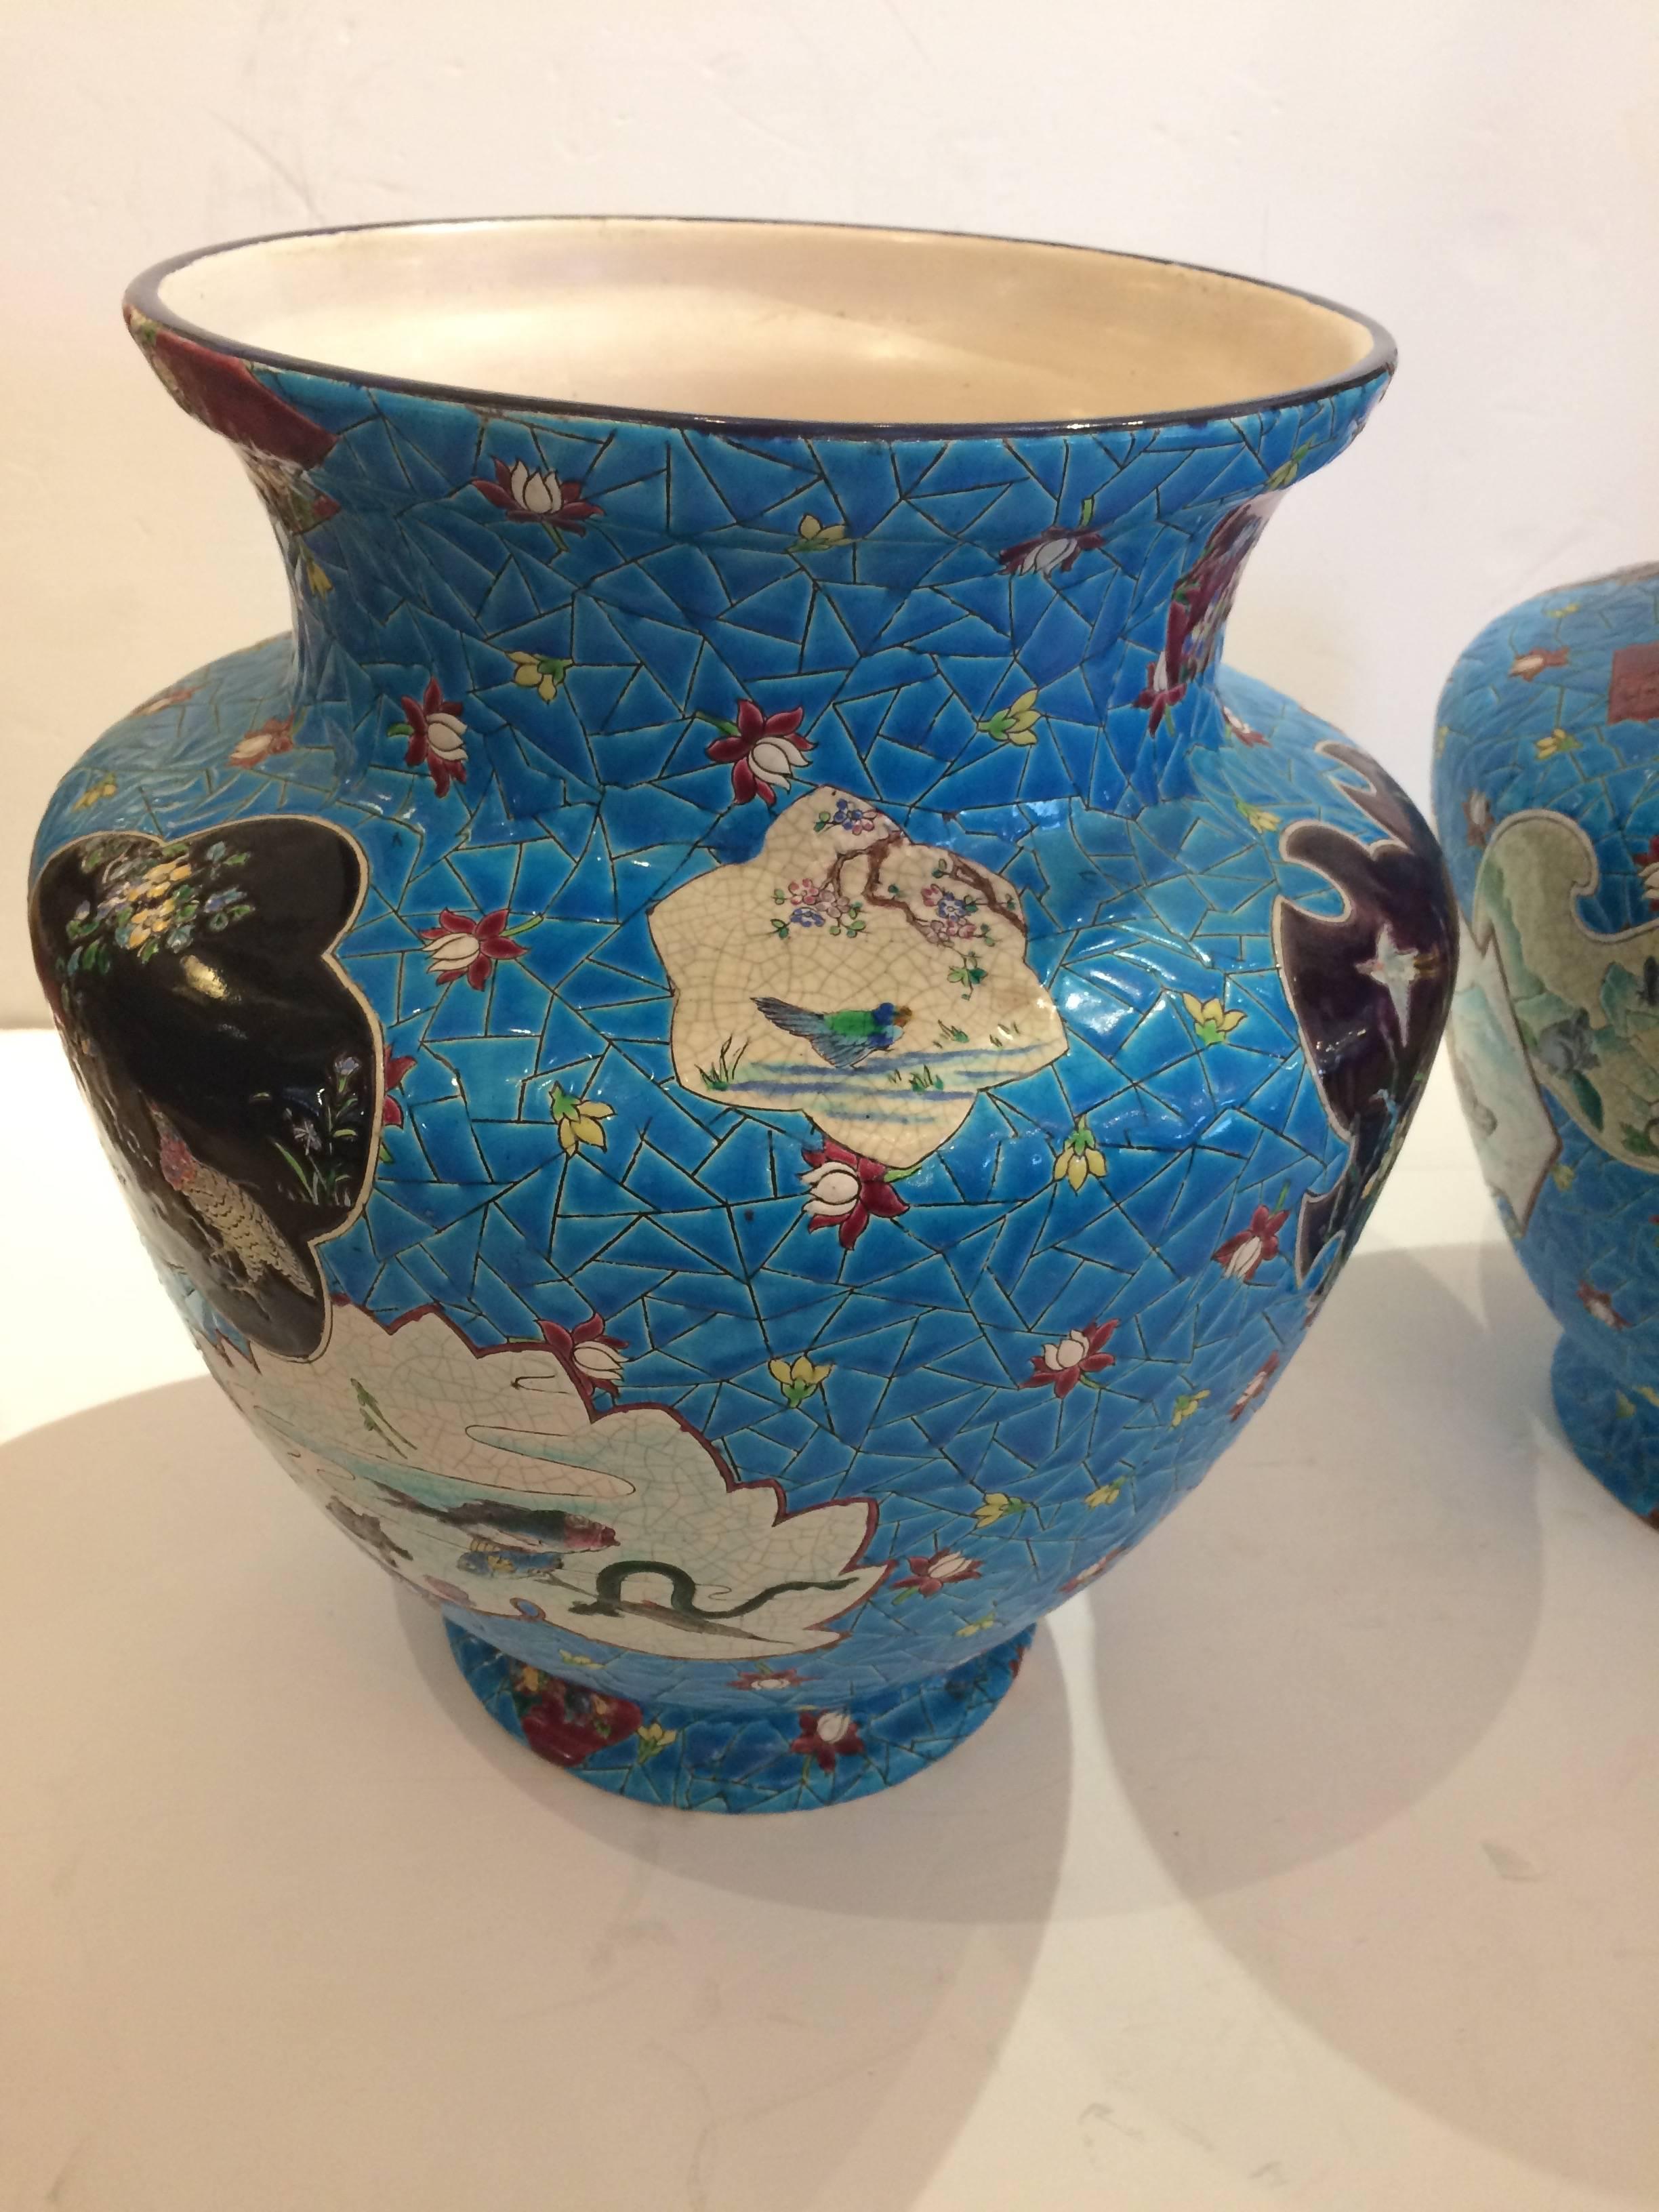 Une paire impressionnante de très grands vases français Longwy avec des détails méticuleux présentant des fleurs, une scène figurative, des oiseaux et un coq dans une palette de couleurs brillantes de bleu céruléen, noir, blanc et marron. L'un d'eux